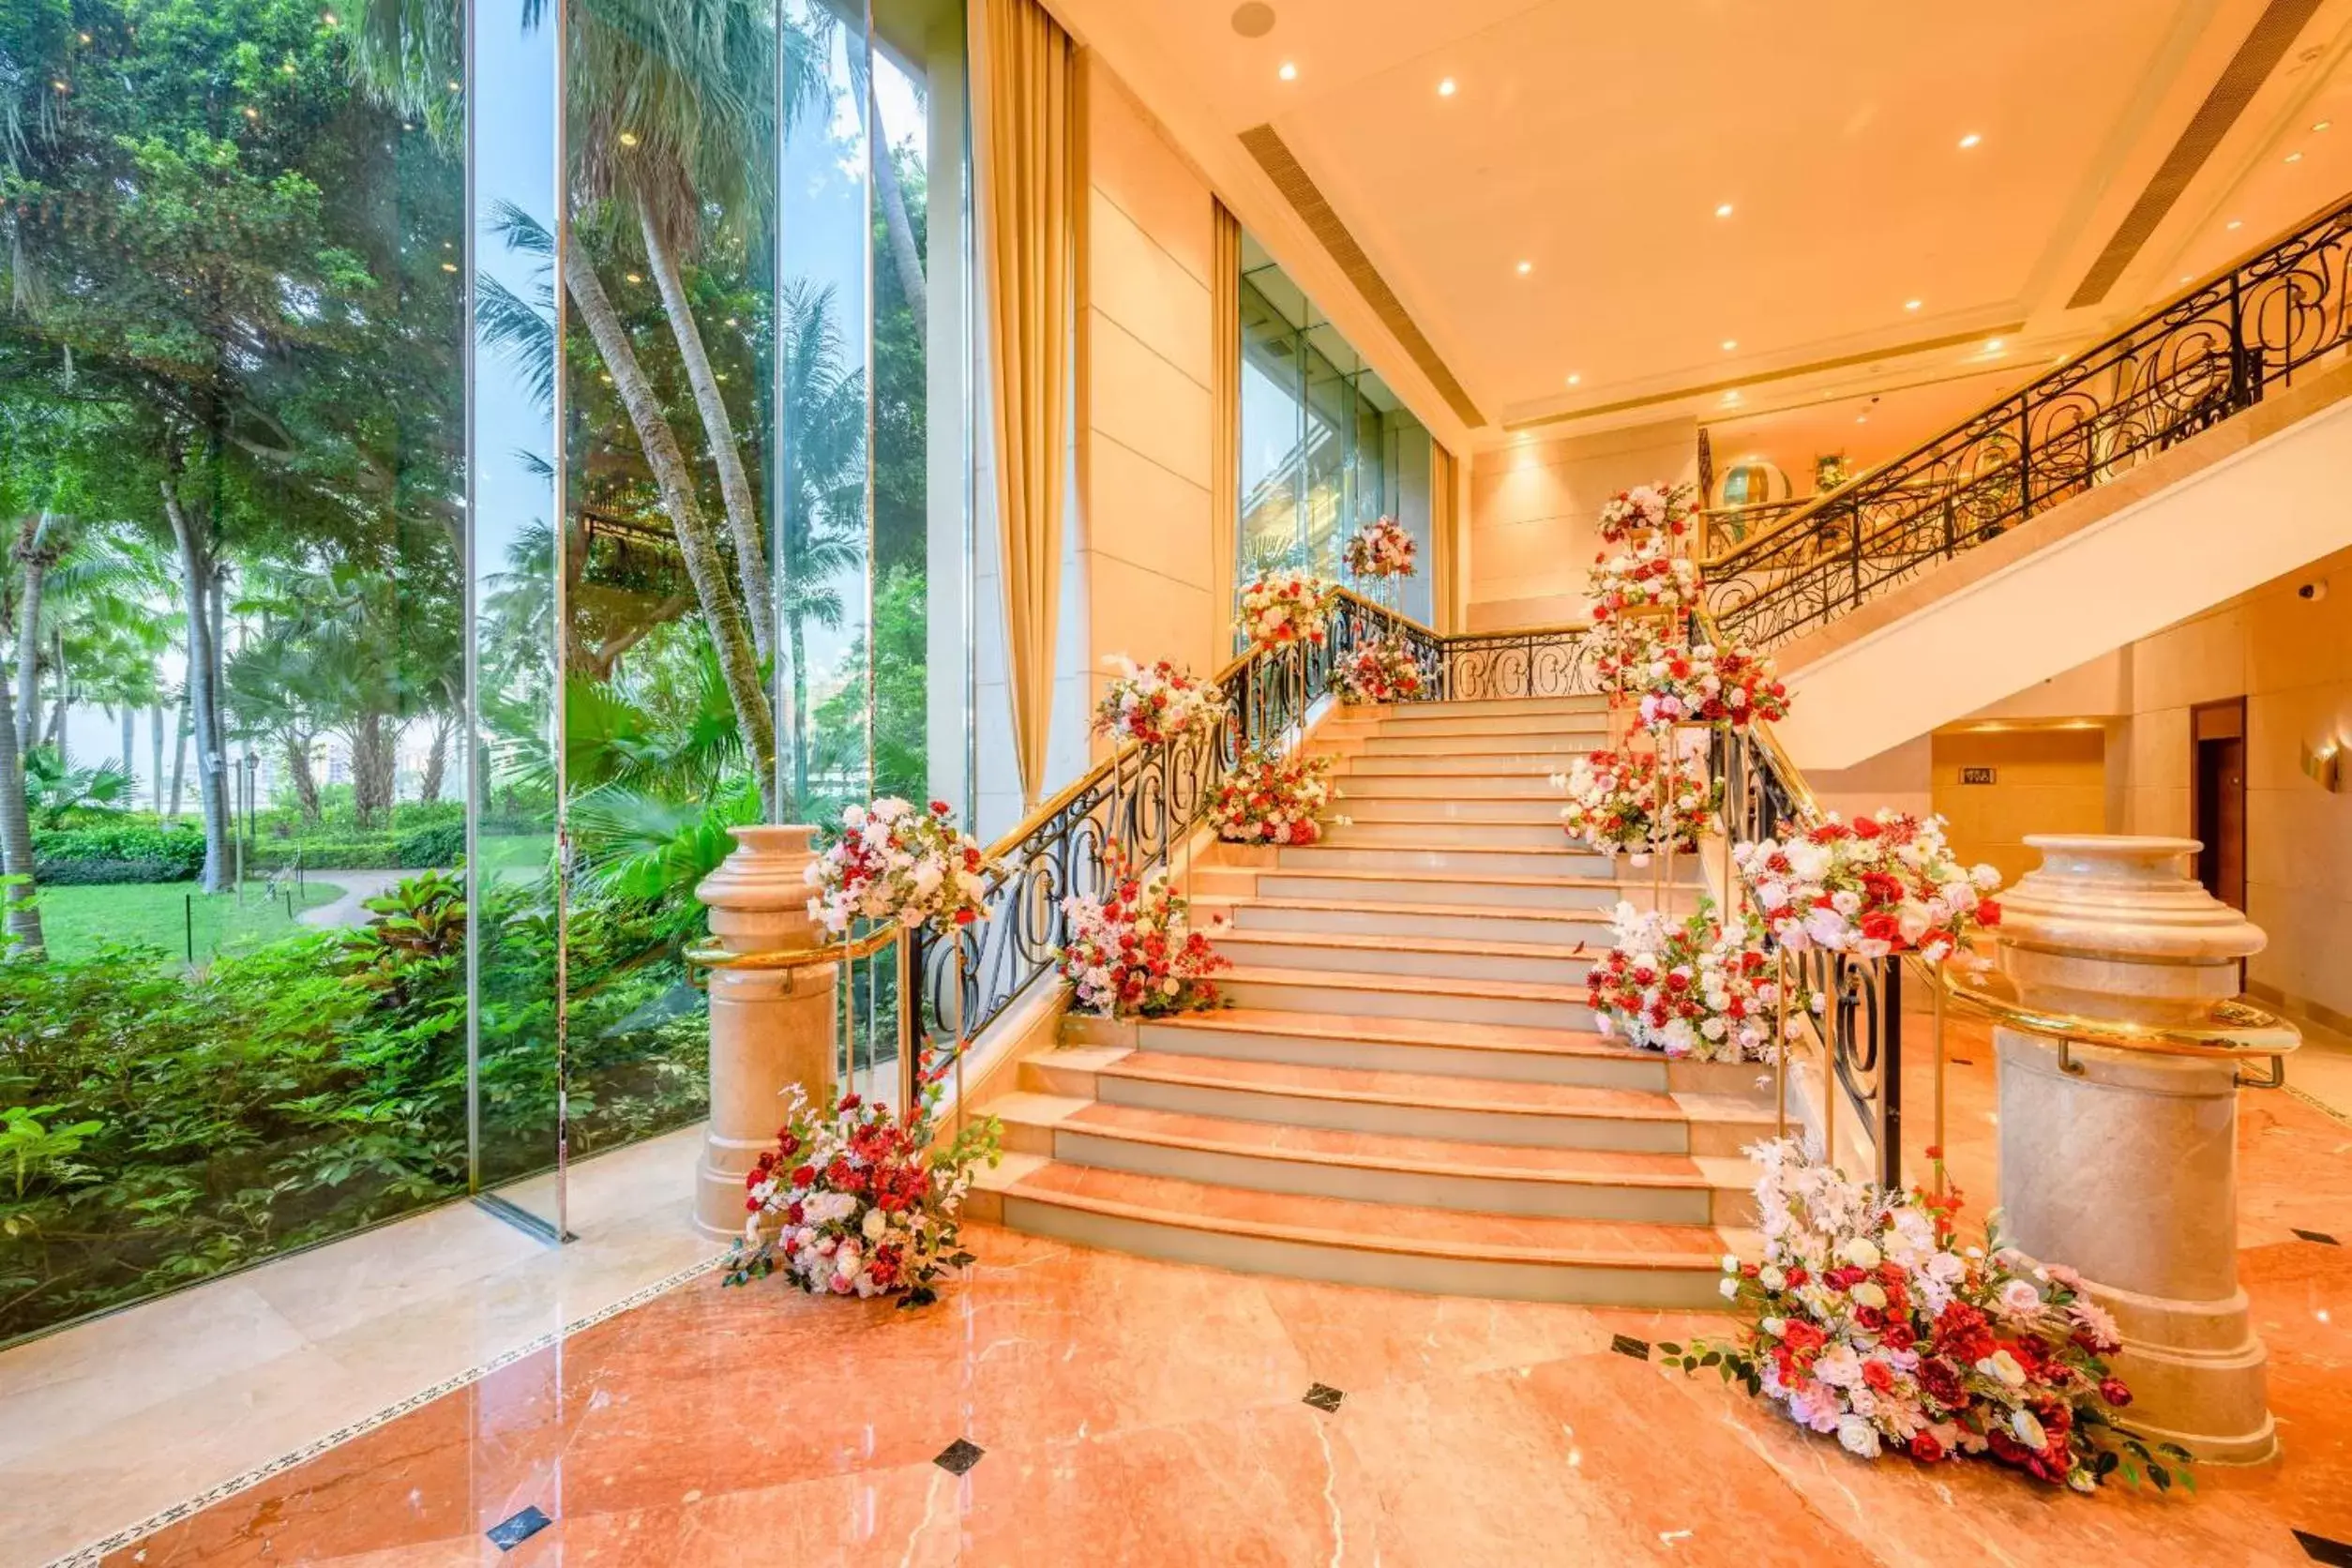 Banquet/Function facilities in Hong Kong Gold Coast Hotel